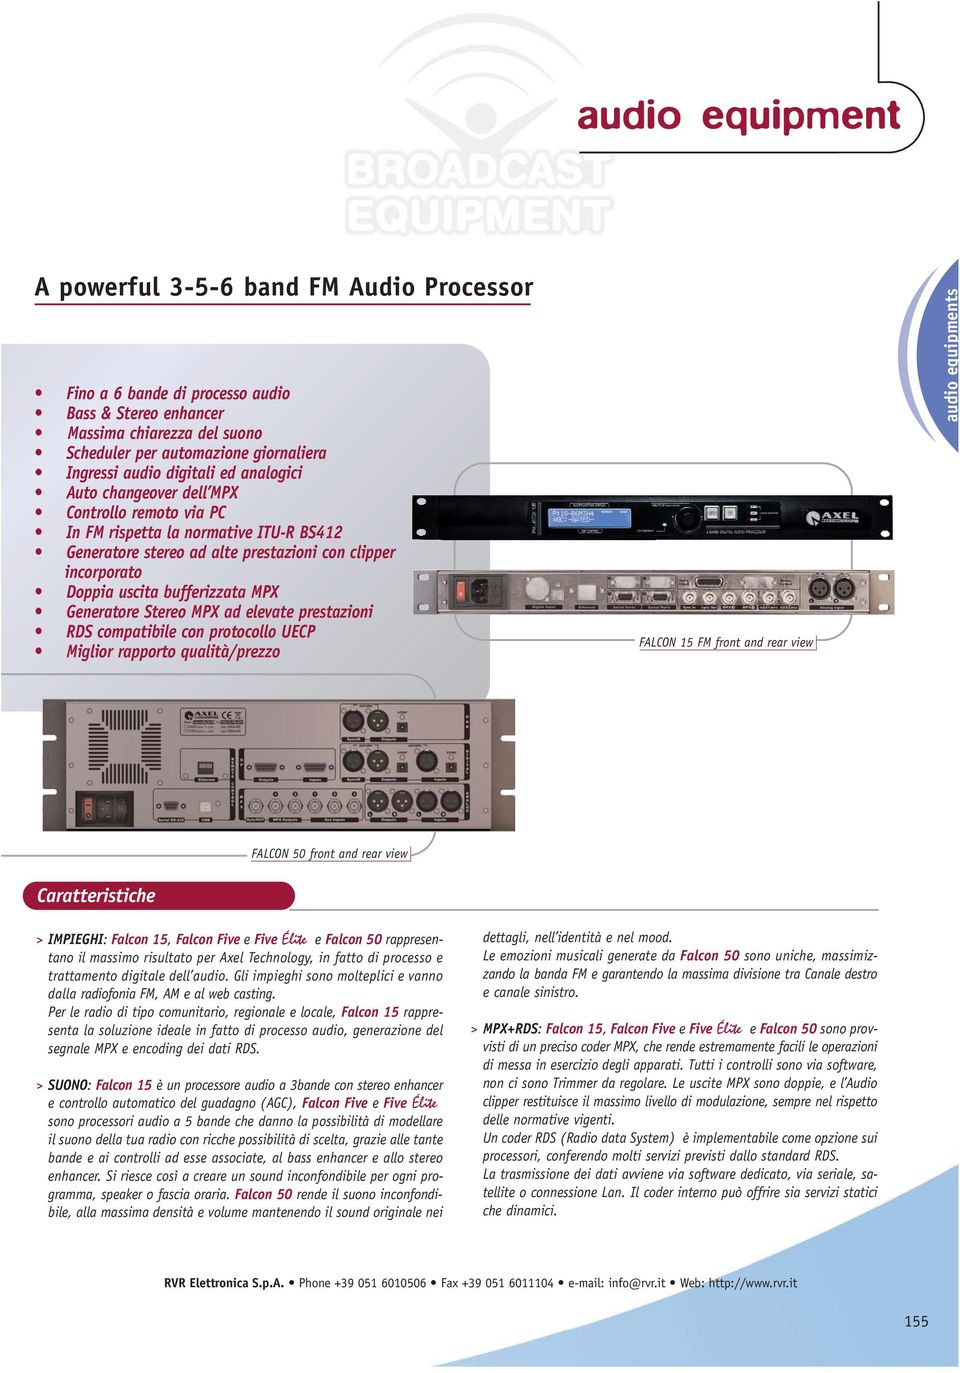 MPX ad elevate prestazioni RDS compatibile con protocollo UECP Miglior rapporto qualità/prezzo FALCON 15 FM front and rear view audio equipments FALCON 50 front and rear view Caratteristiche >